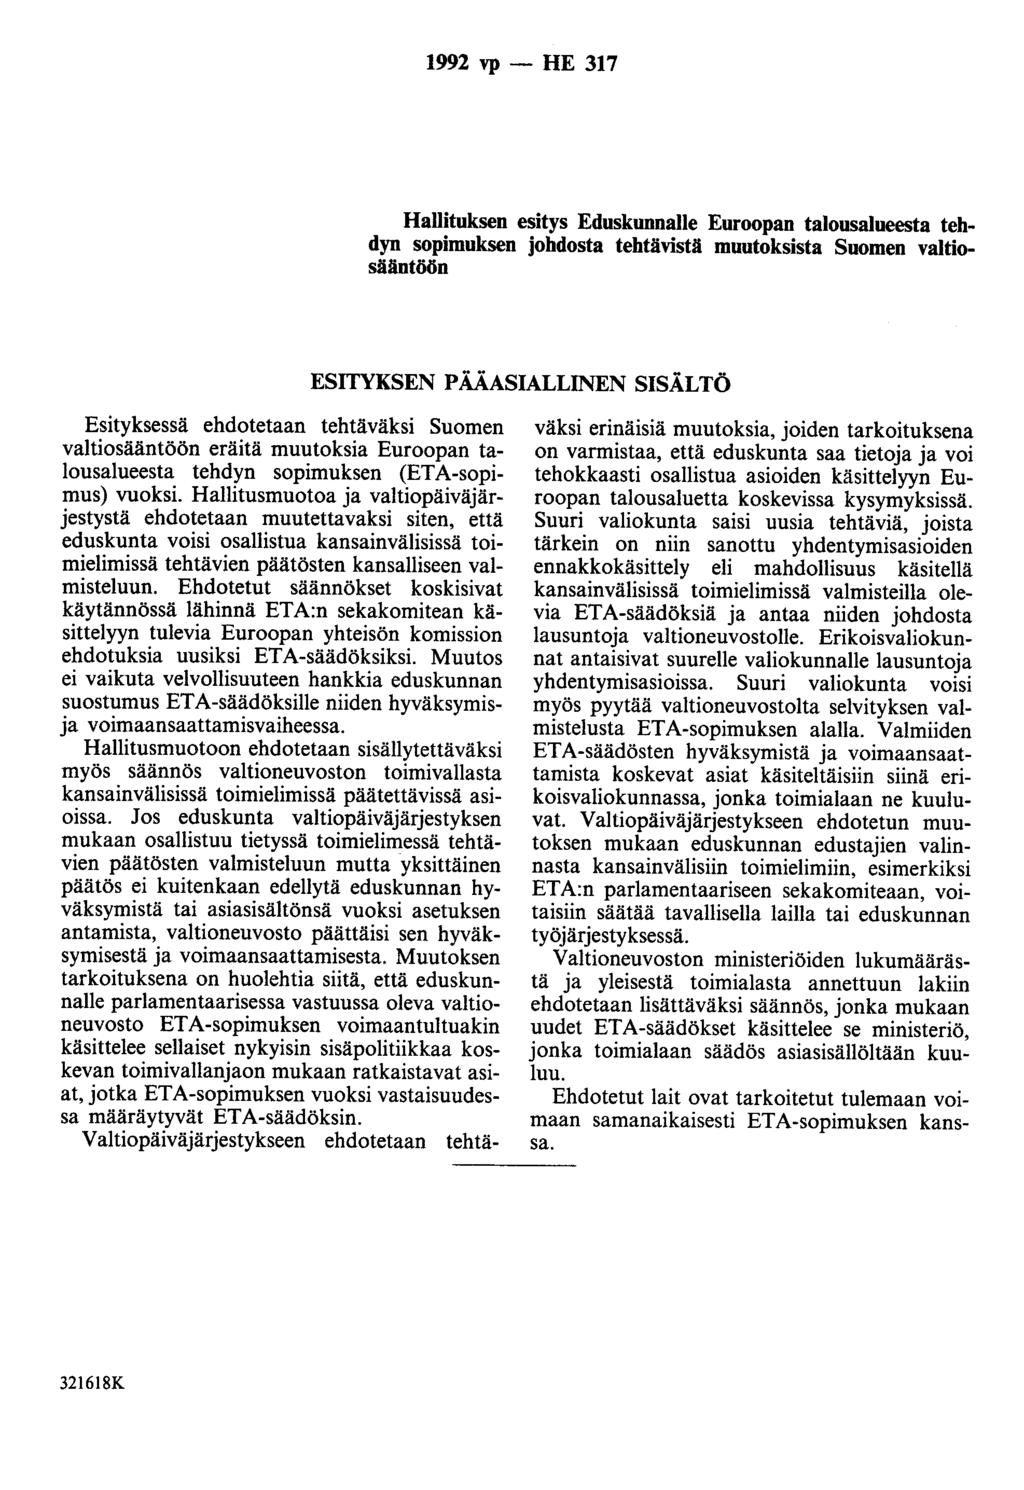 1992 vp - HE 317 Hallituksen esitys Eduskunnalle Euroopan talousalueesta tehdyn sopimuksen johdosta tehtävistä muutoksista Suomen valtiosälintöön ESITYKSEN PÄÄASIALLINEN SISÄLTÖ Esityksessä